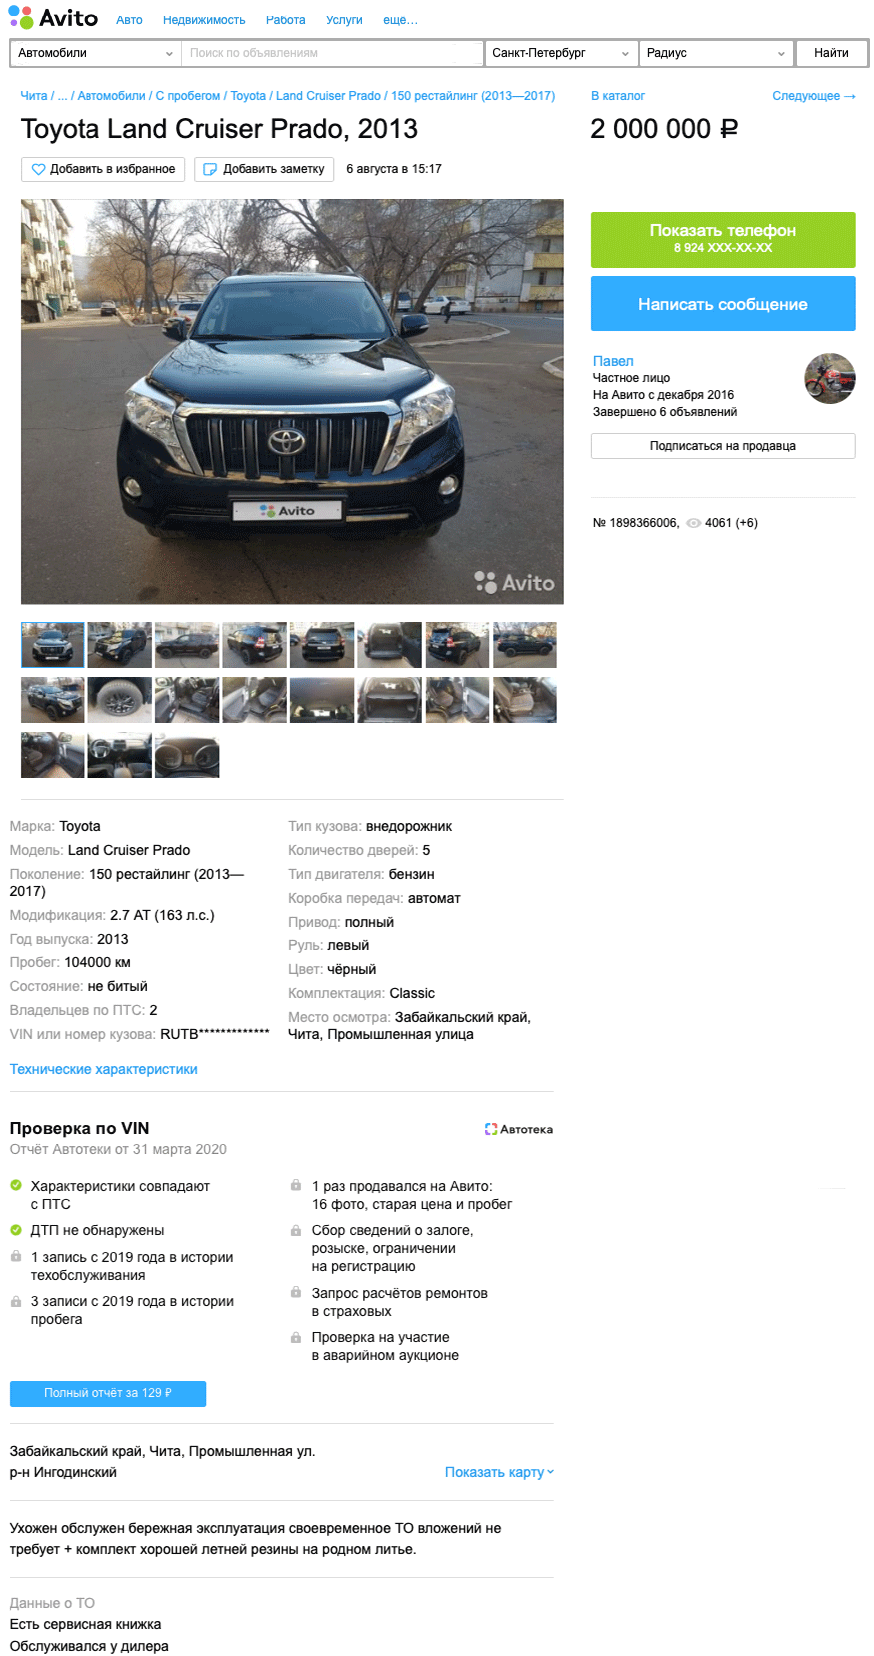 Почти как настоящий: стоит ли покупать Toyota Land Cruiser Prado 150 за 2 млн рублей?